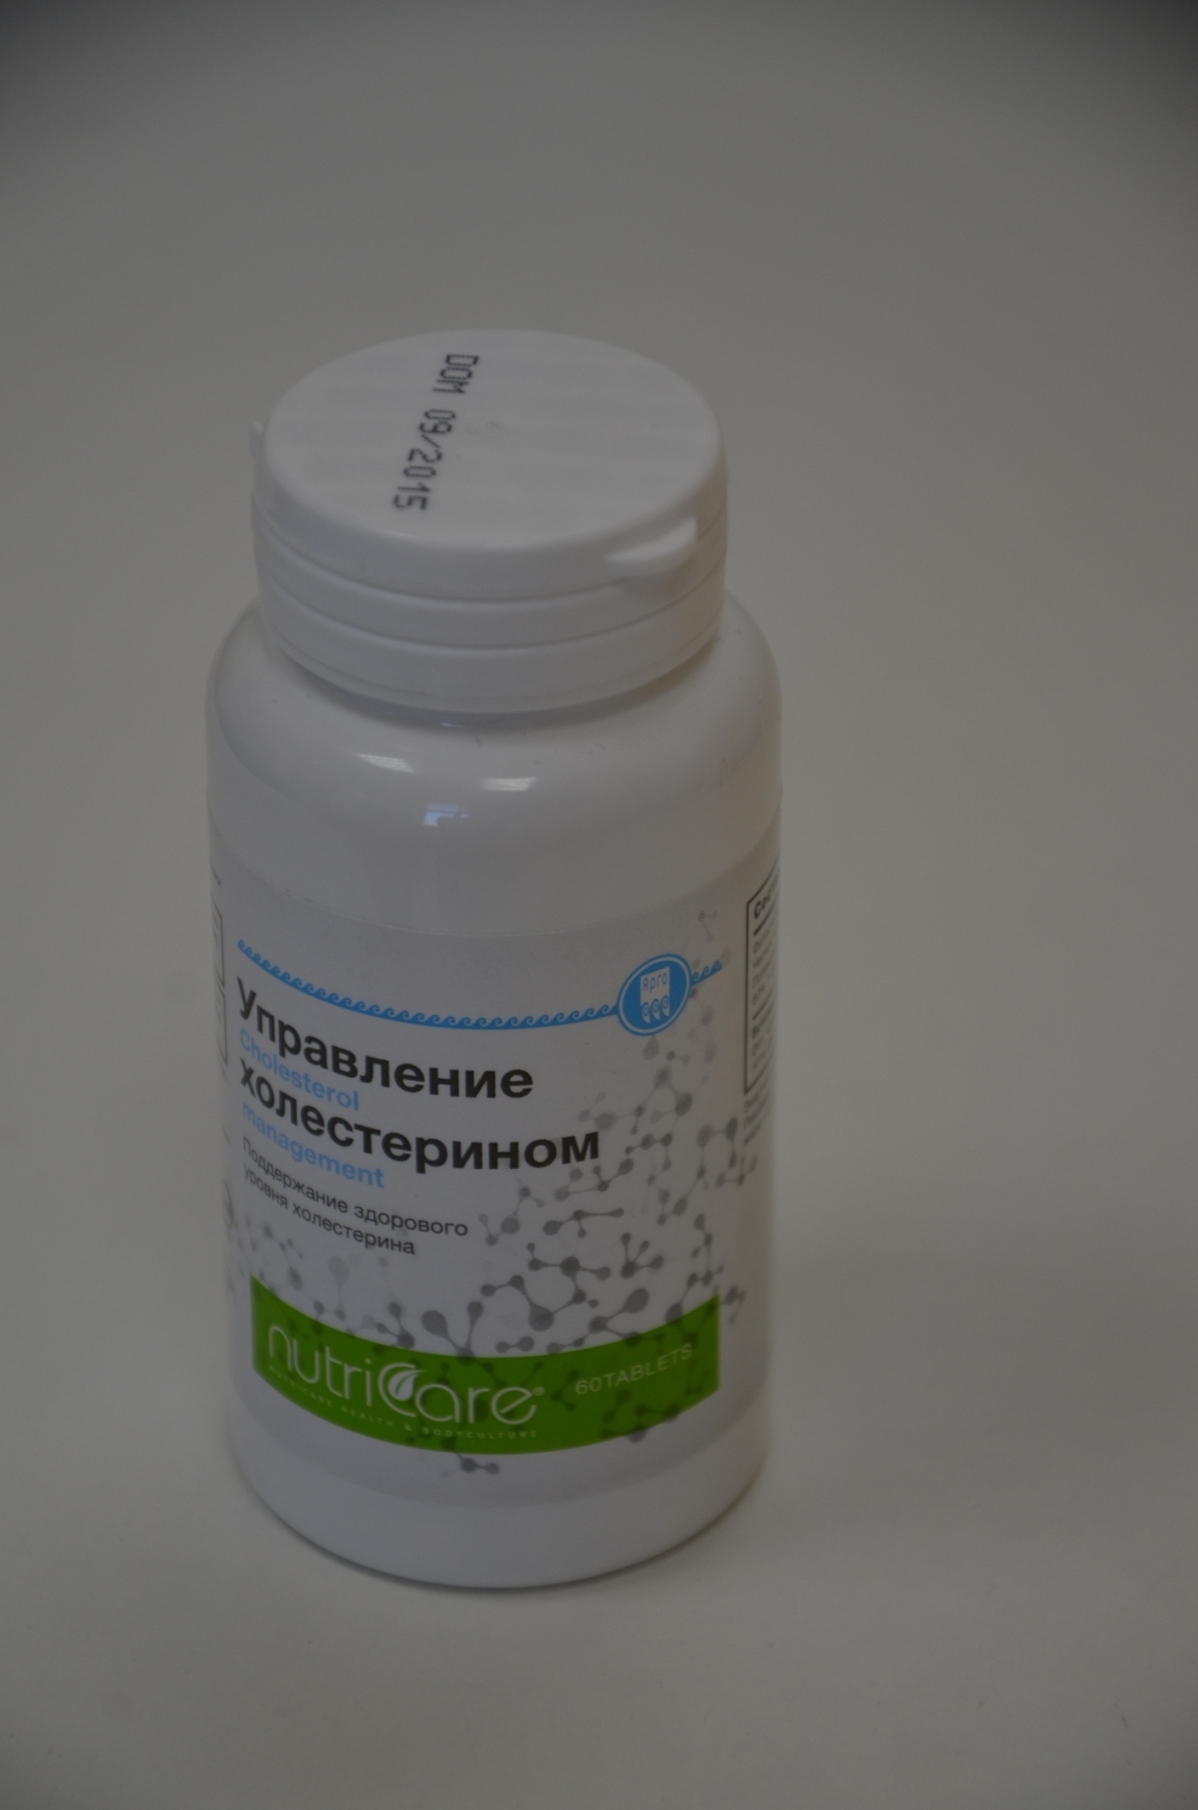 Управление холестерином купить Екатеринбург витамины